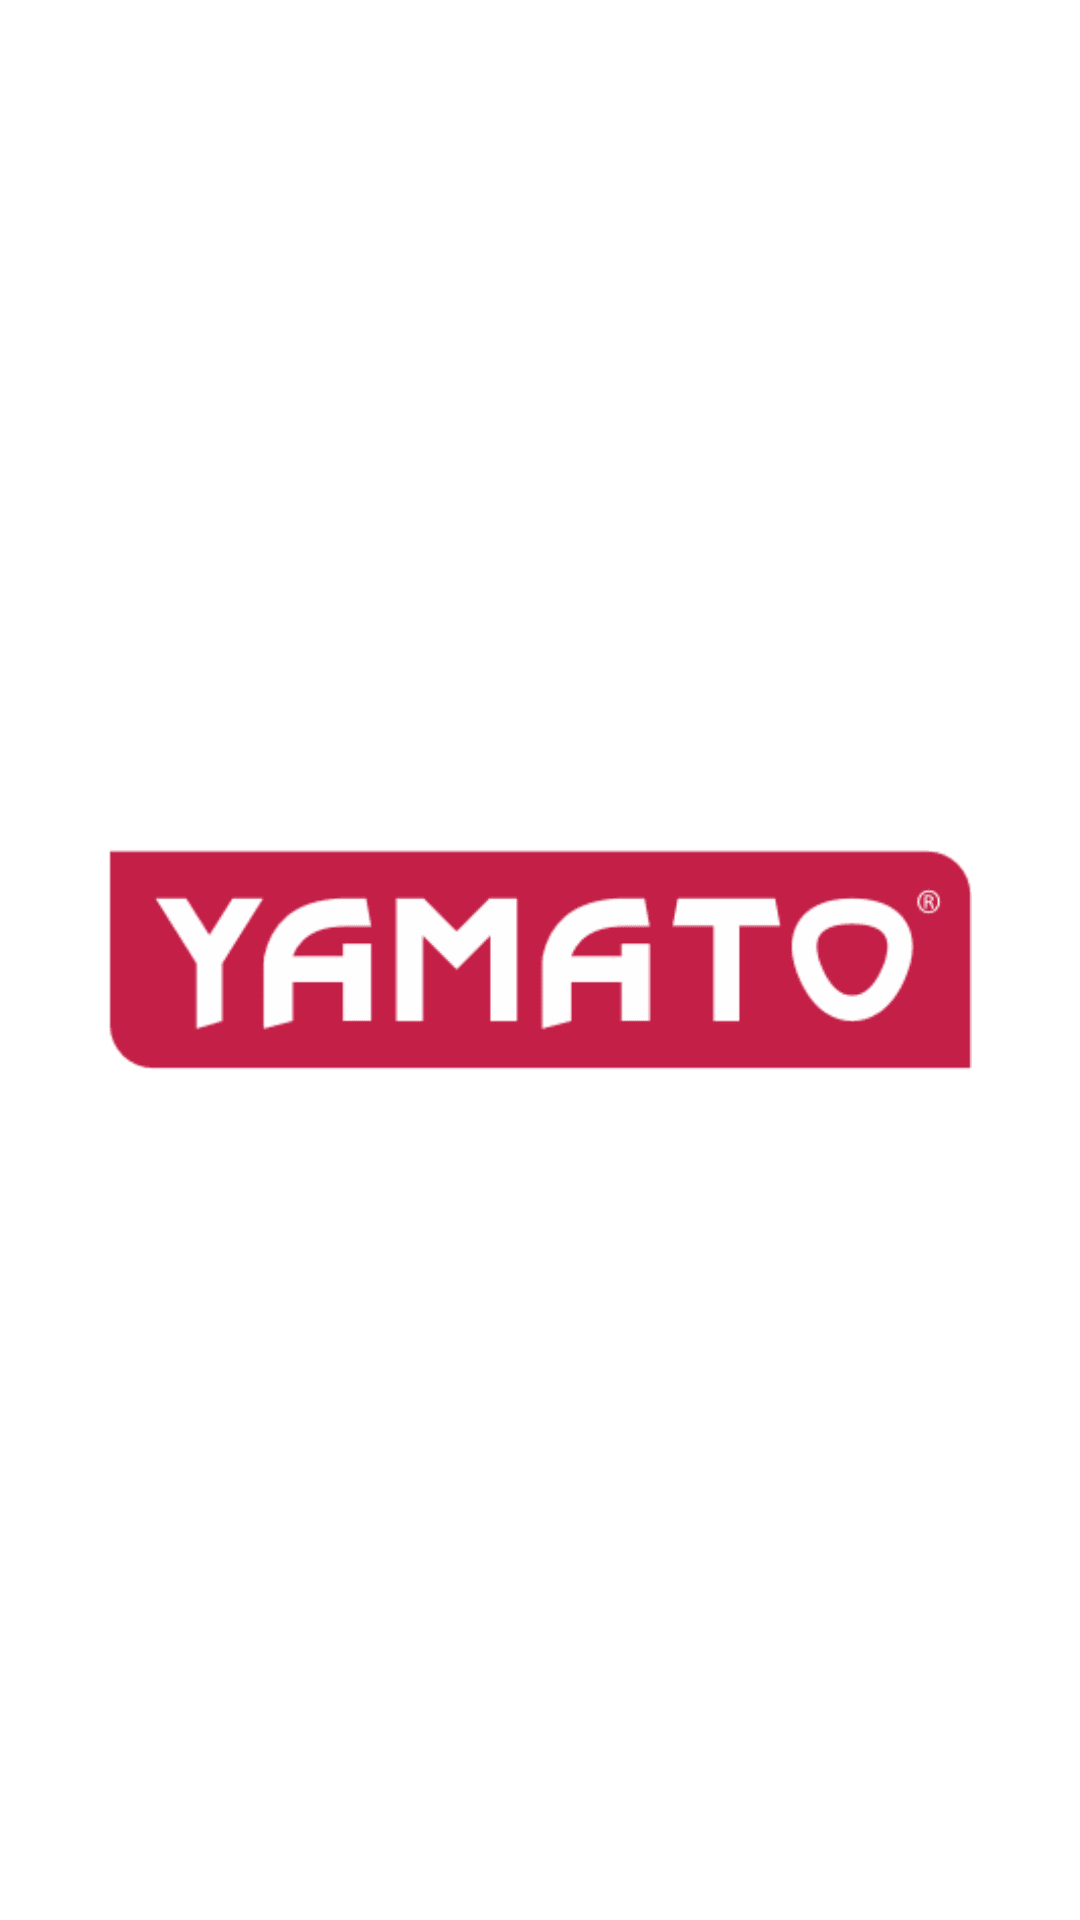 Yamato - Trapano a percussione elettrico 810Watt mandrino ø mm.13 Yamato